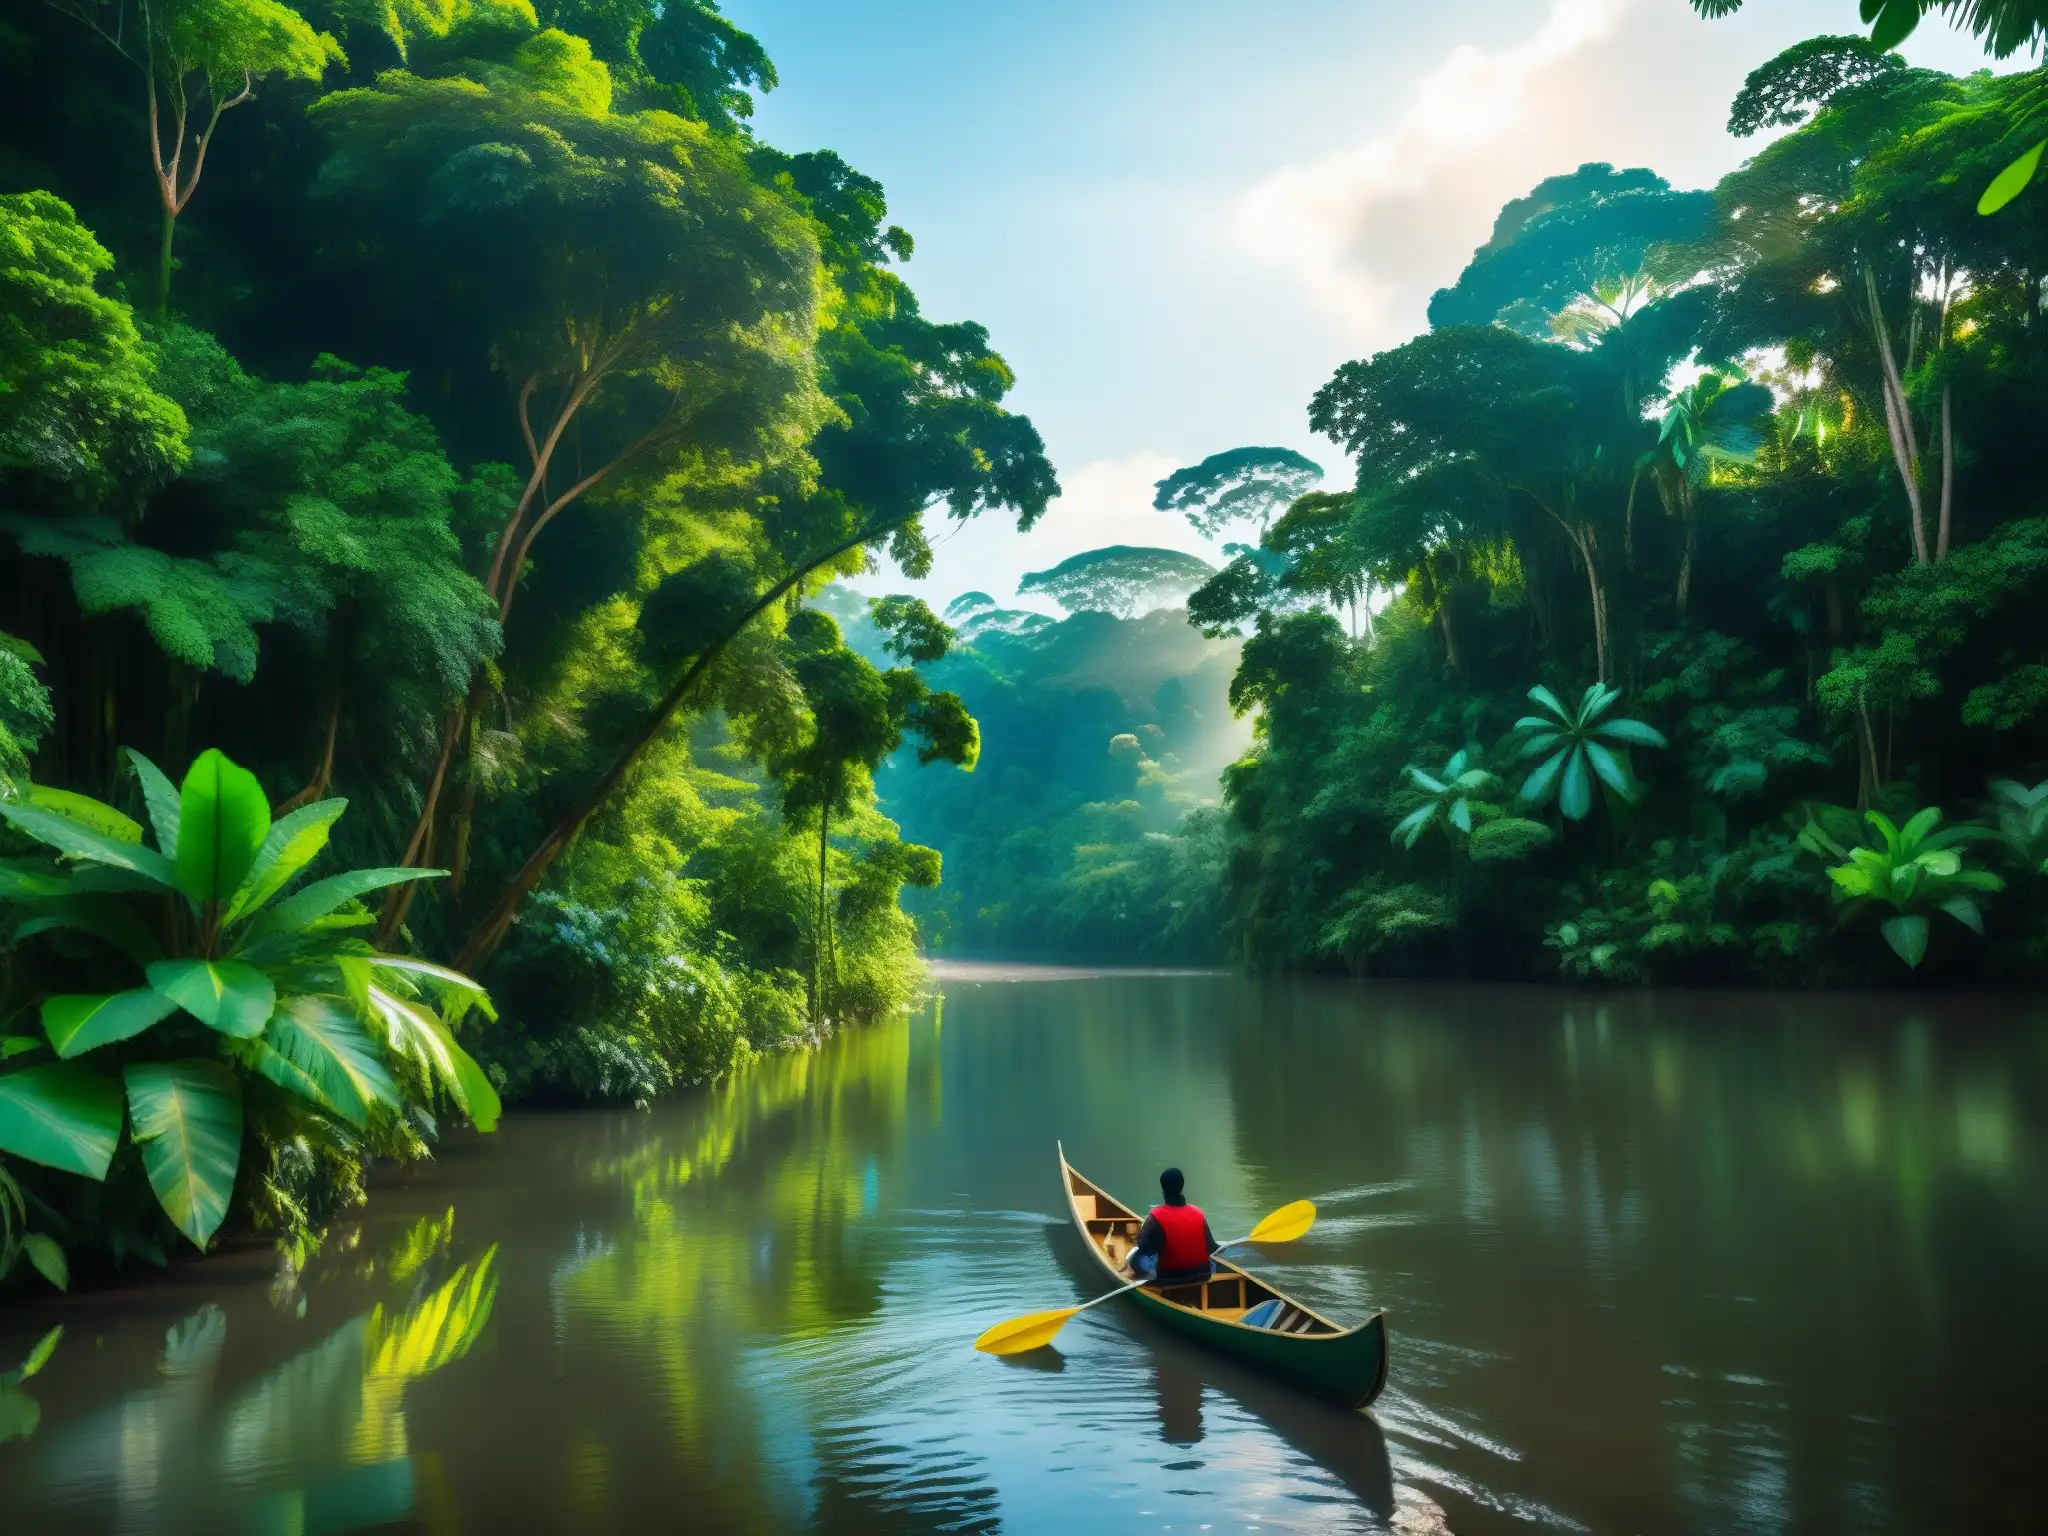 Imagen 8k detallada de la exuberante selva amazónica con un río serpenteante, reflejando la mística atmósfera del origen leyenda Madre Agua Sudamérica